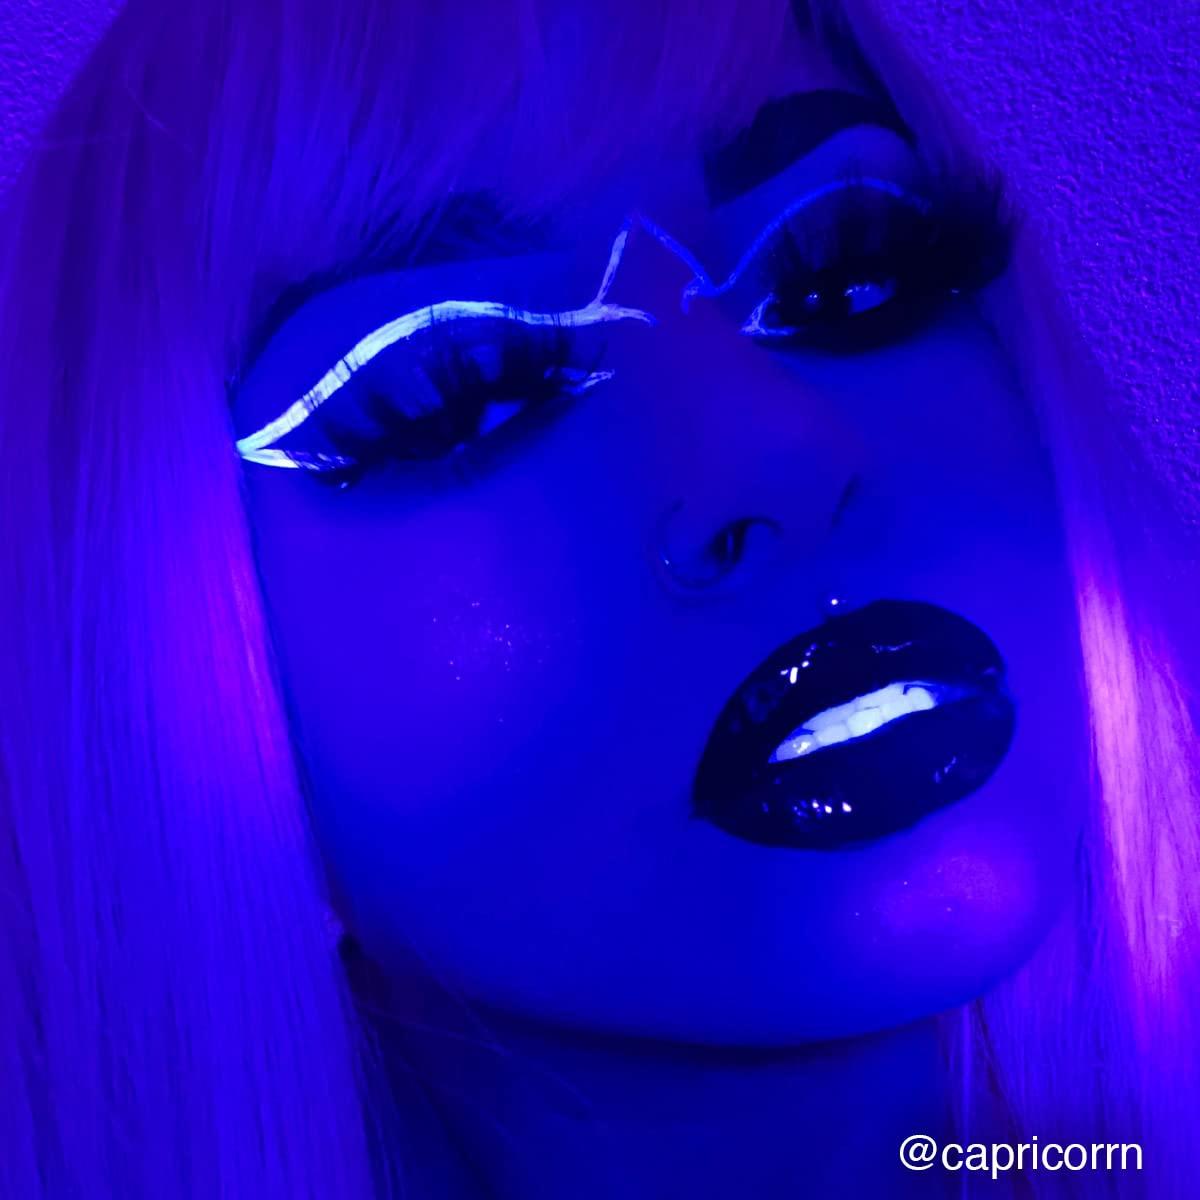 Mehron Makeup Paradise Makeup AQ Face & Body Paint 1.4 oz Celestial - Neon Bluelight Blue